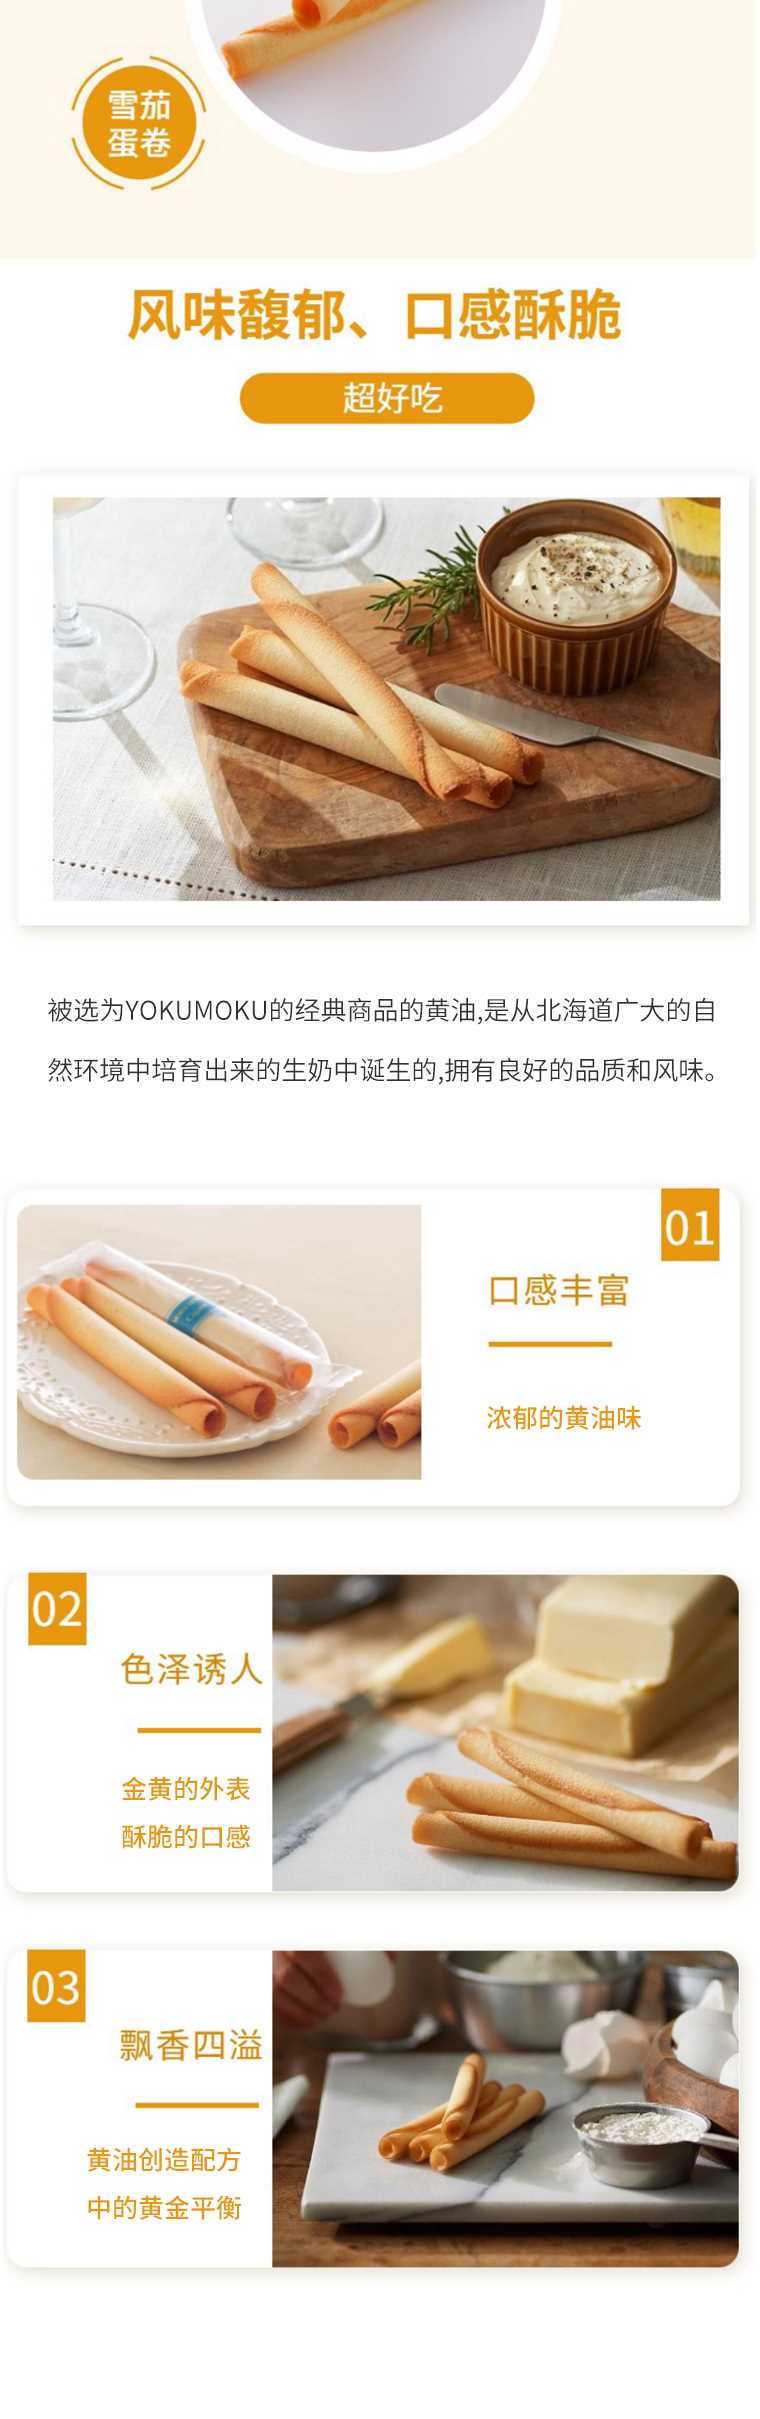 YOKU-MOKU-北海道手工黄油曲奇饼干蛋卷20枚30枚_02.jpg